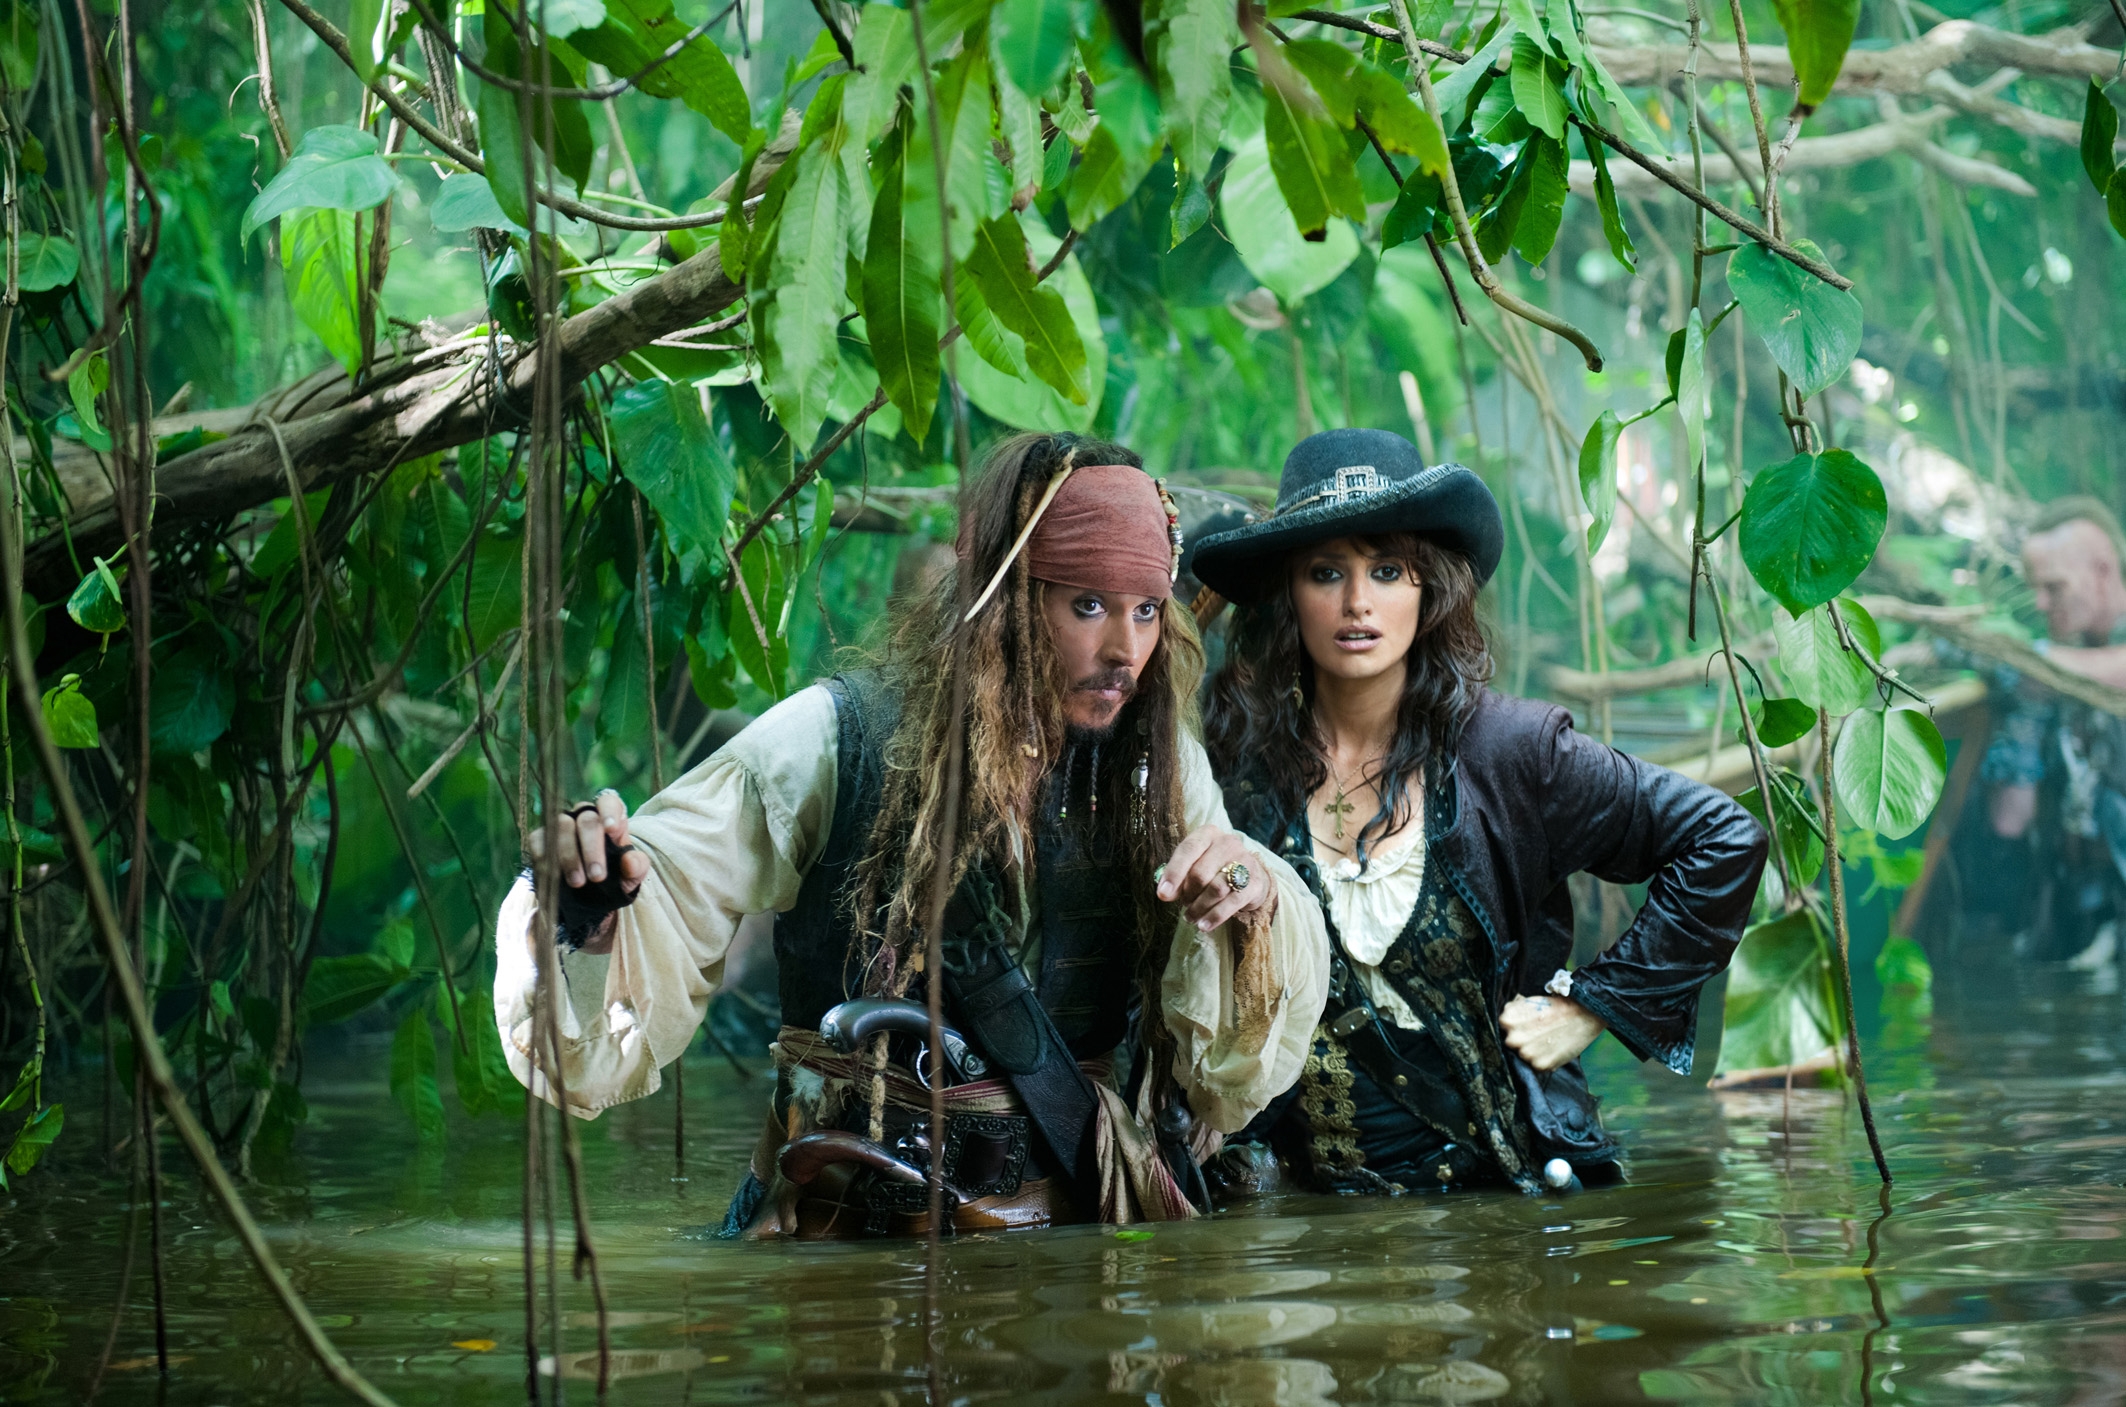 Image du film Pirates des Caraïbes : la fontaine de jouvence 24e2bca2-cbf4-4c48-b1f6-5fc2def7367d